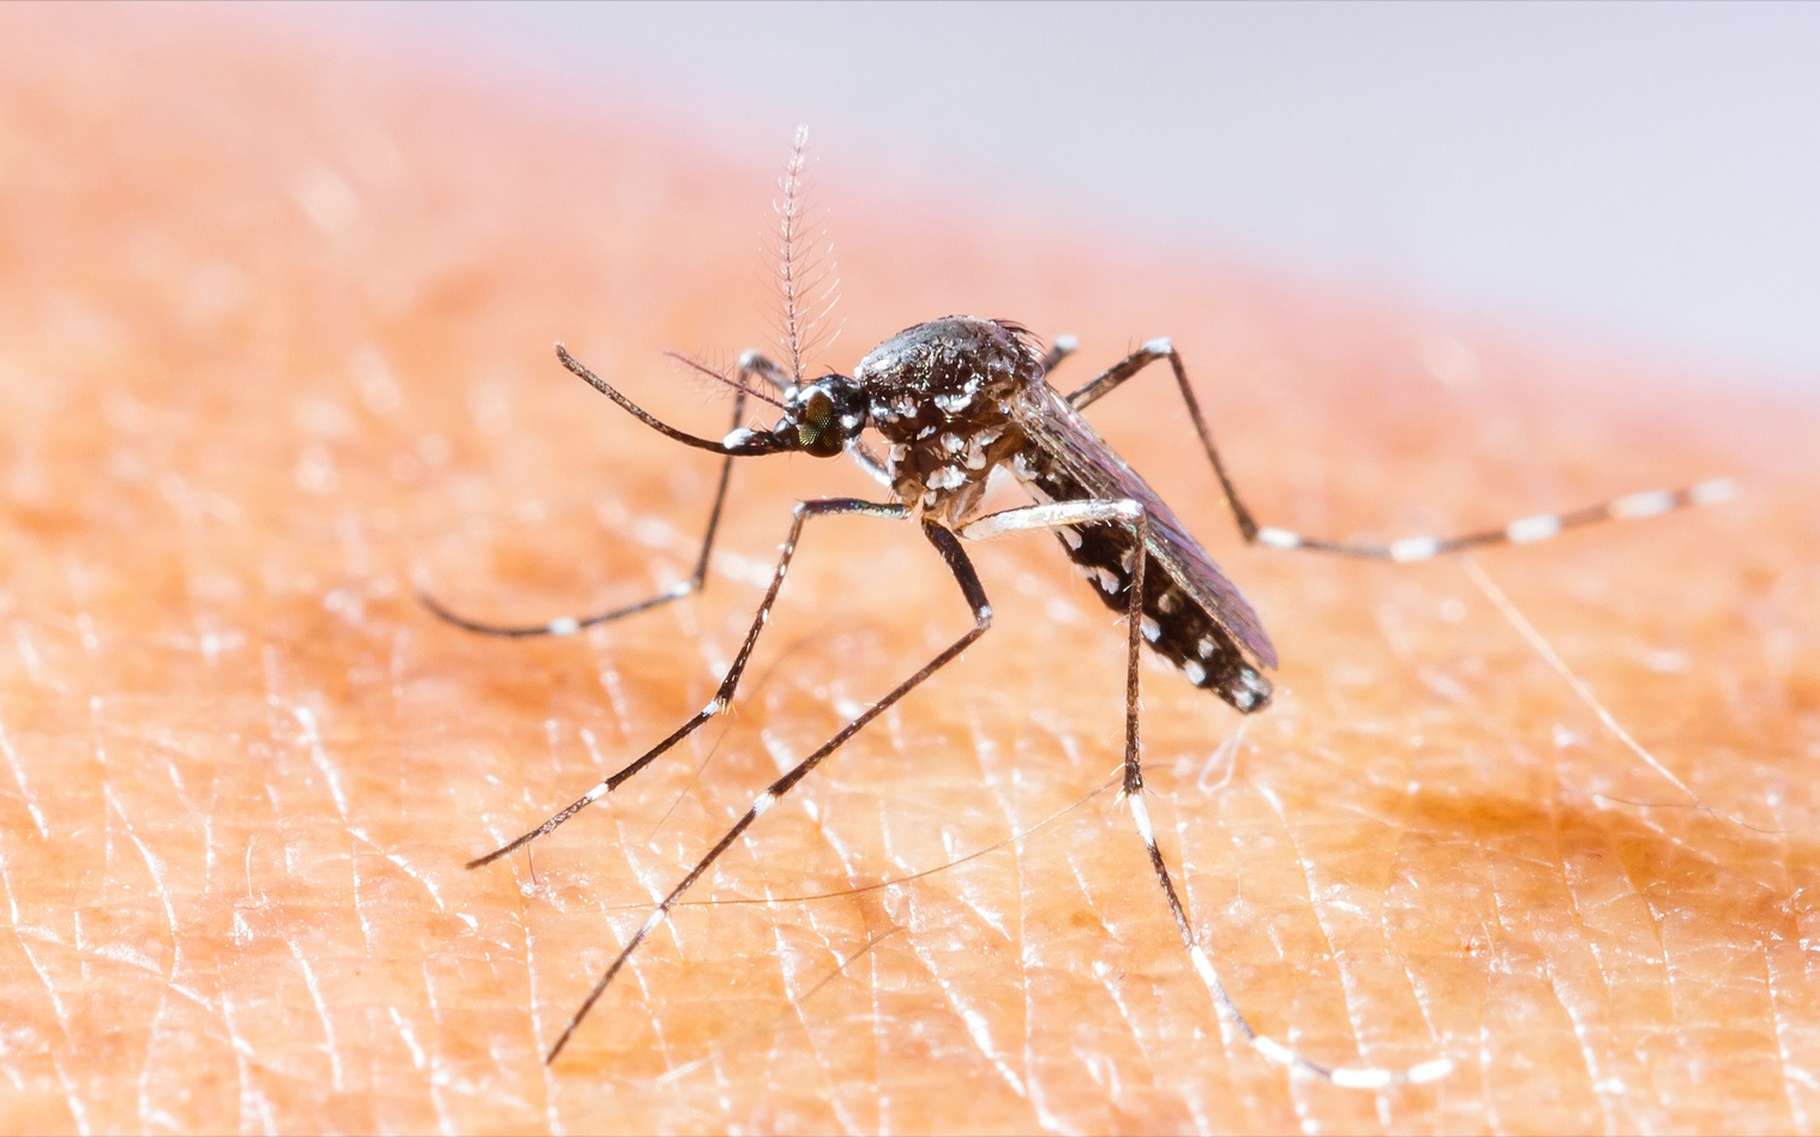 Le moustique-tigre peut transmettre la dengue, le chikungunya et le Zika. © Smith1972, Shutterstock